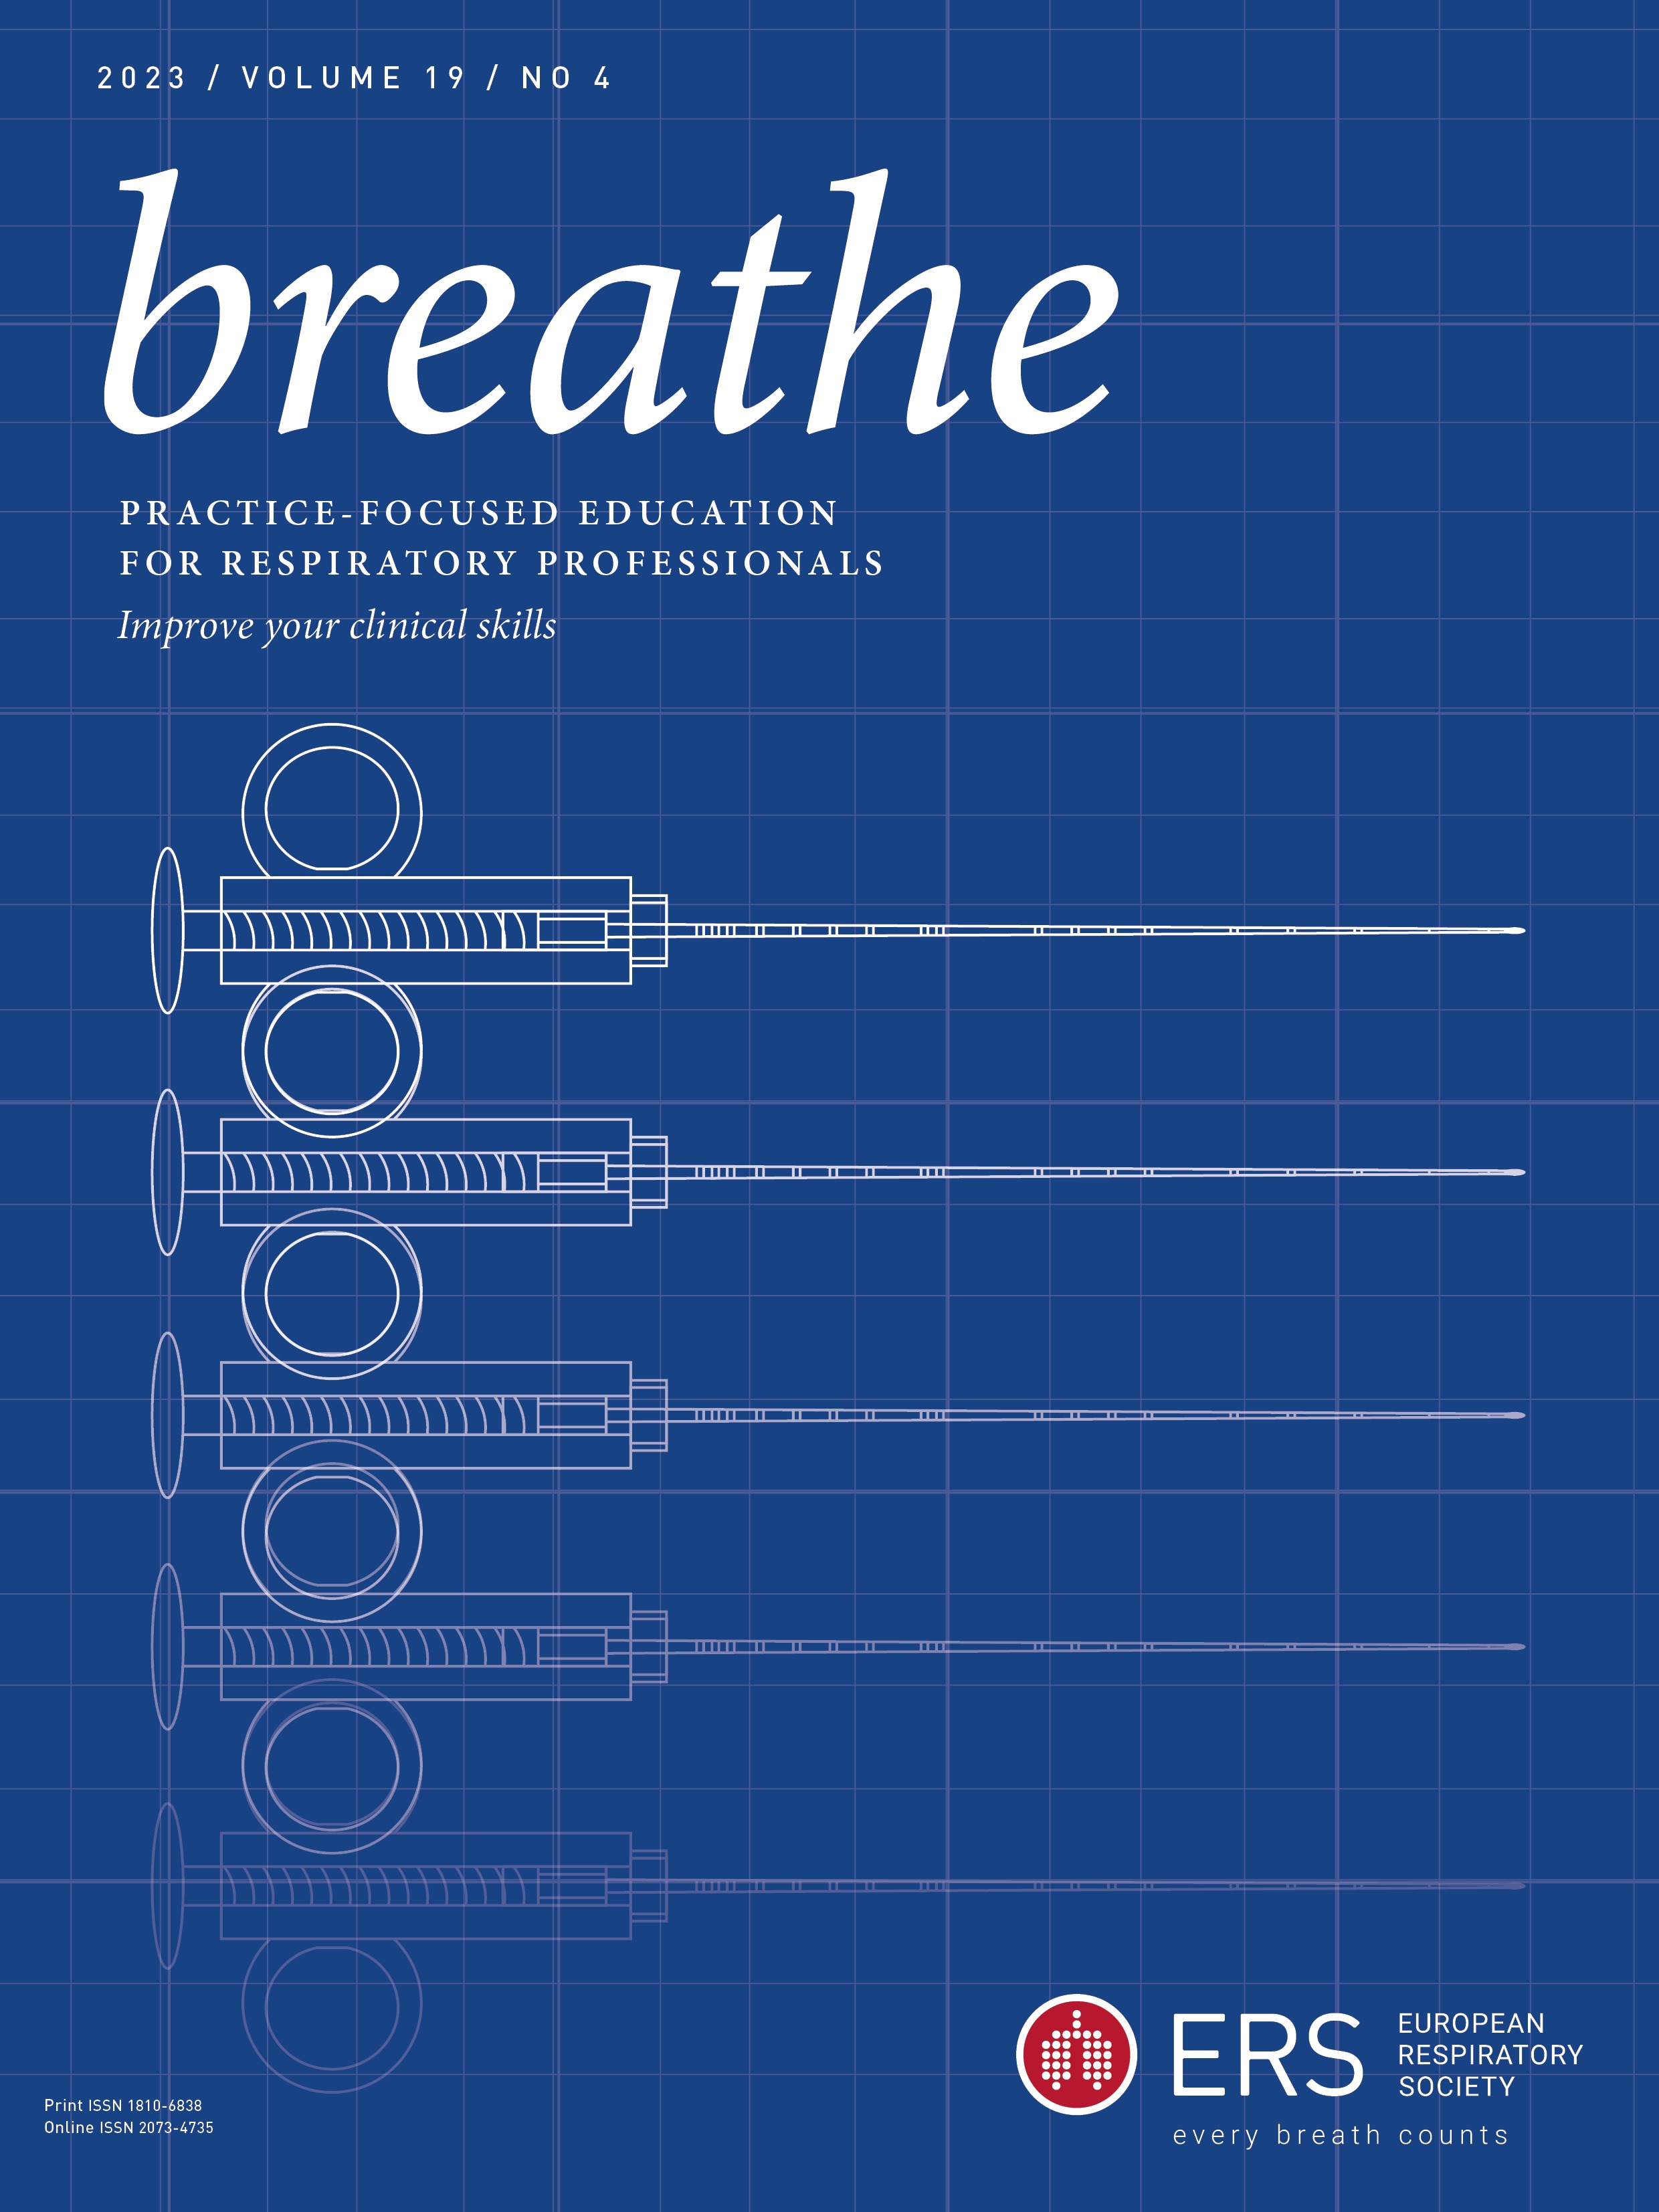 Breathe, list of peer reviewers 2023